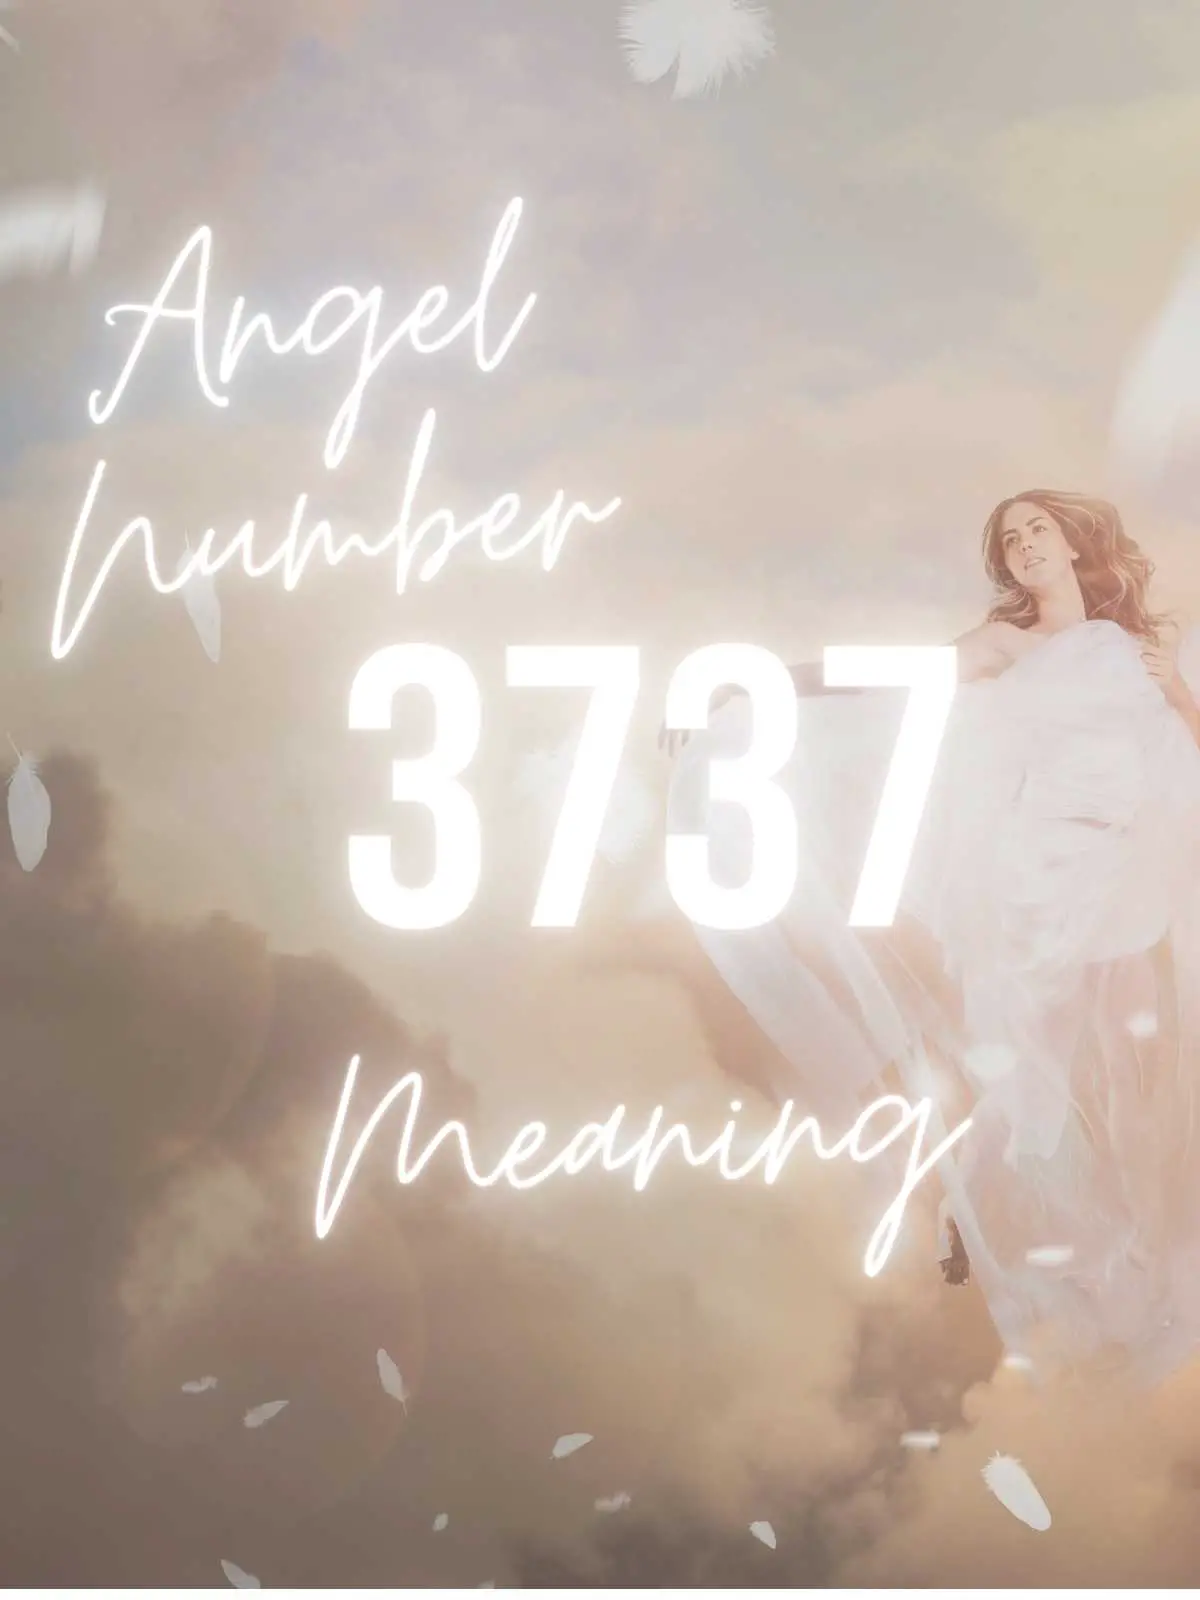 angel number 3737